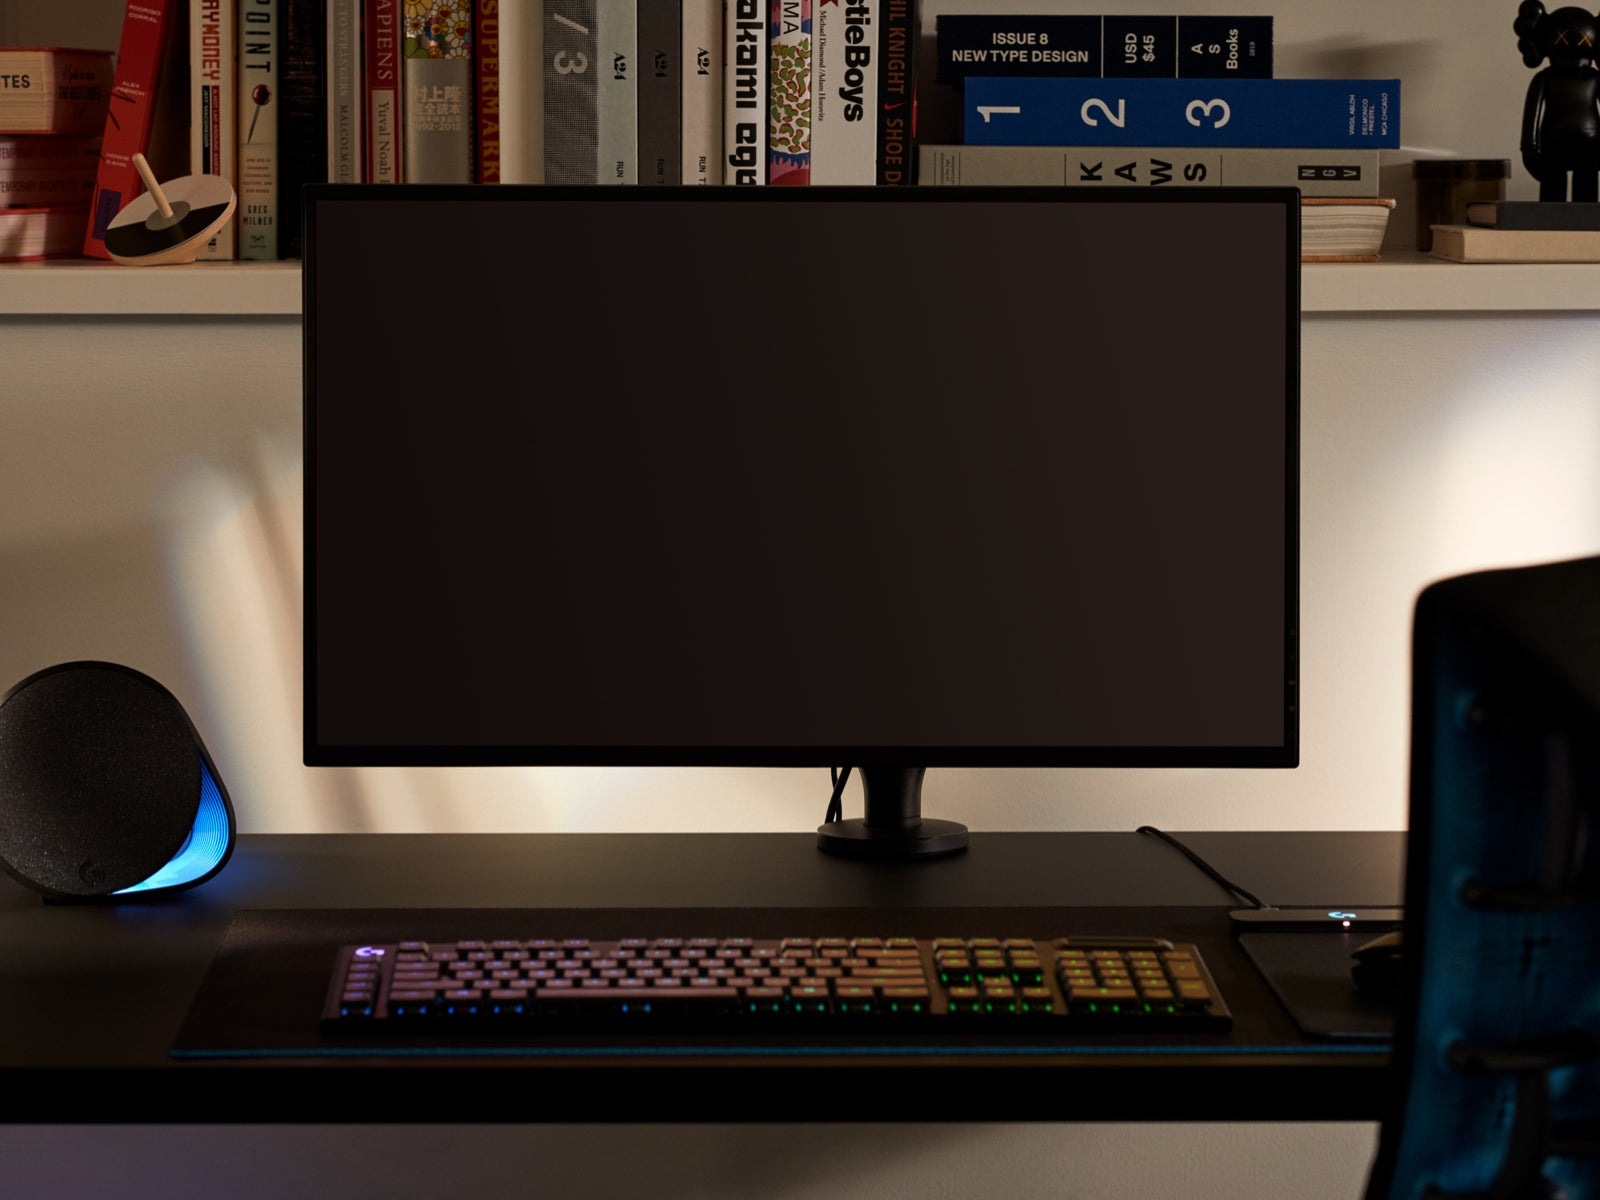 Un grande monitor, a rappresentare che il braccio porta monitor Ollin può sorreggere schermi di ogni dimensione, è collocato sul braccio sopra una scrivania con una tastiera in primo piano e oggetti su un ripiano in secondo piano.